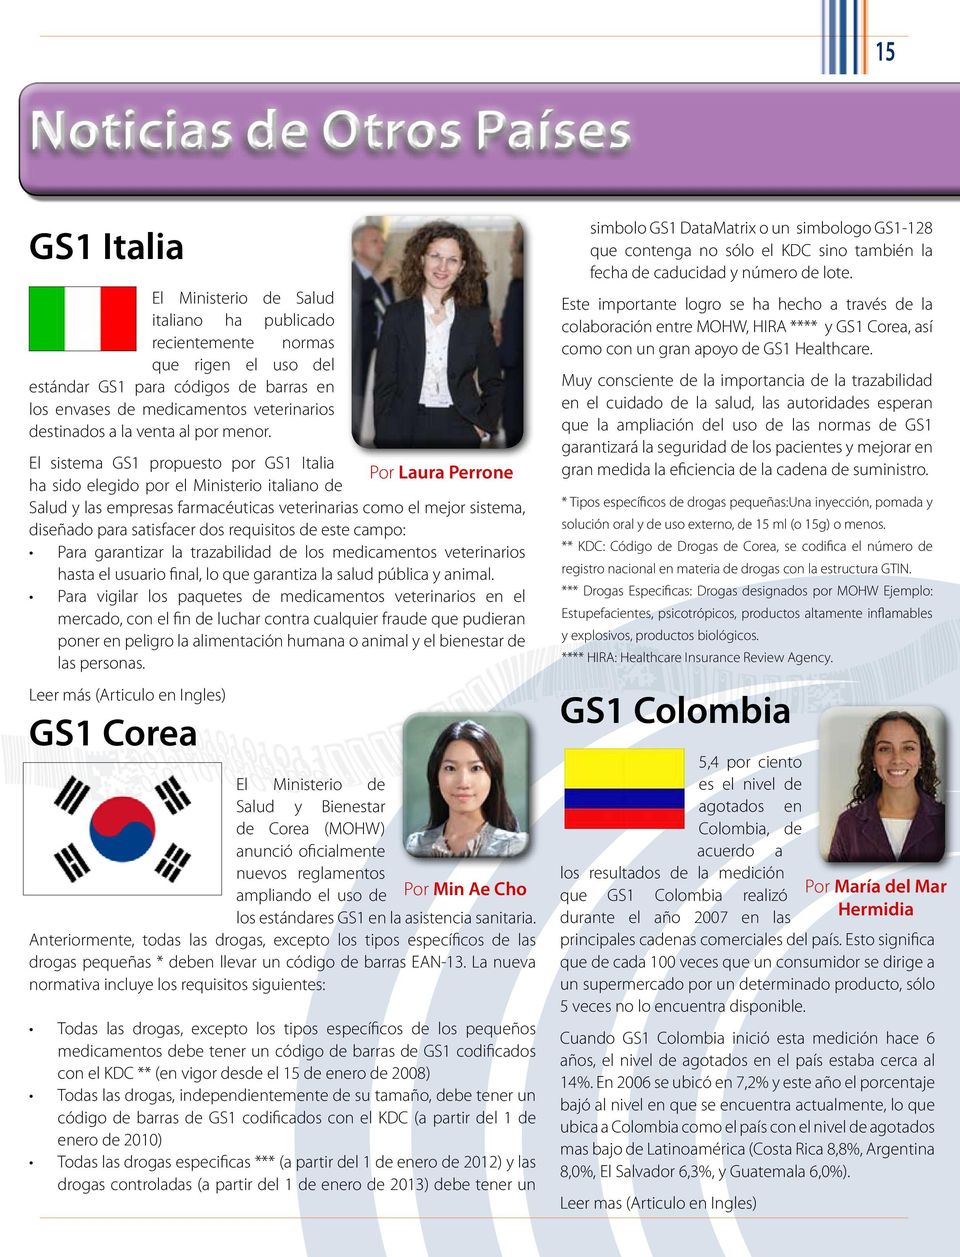 El sistema GS1 propuesto por GS1 Italia Por Laura Perrone ha sido elegido por el Ministerio italiano de Salud y las empresas farmacéuticas veterinarias como el mejor sistema, diseñado para satisfacer